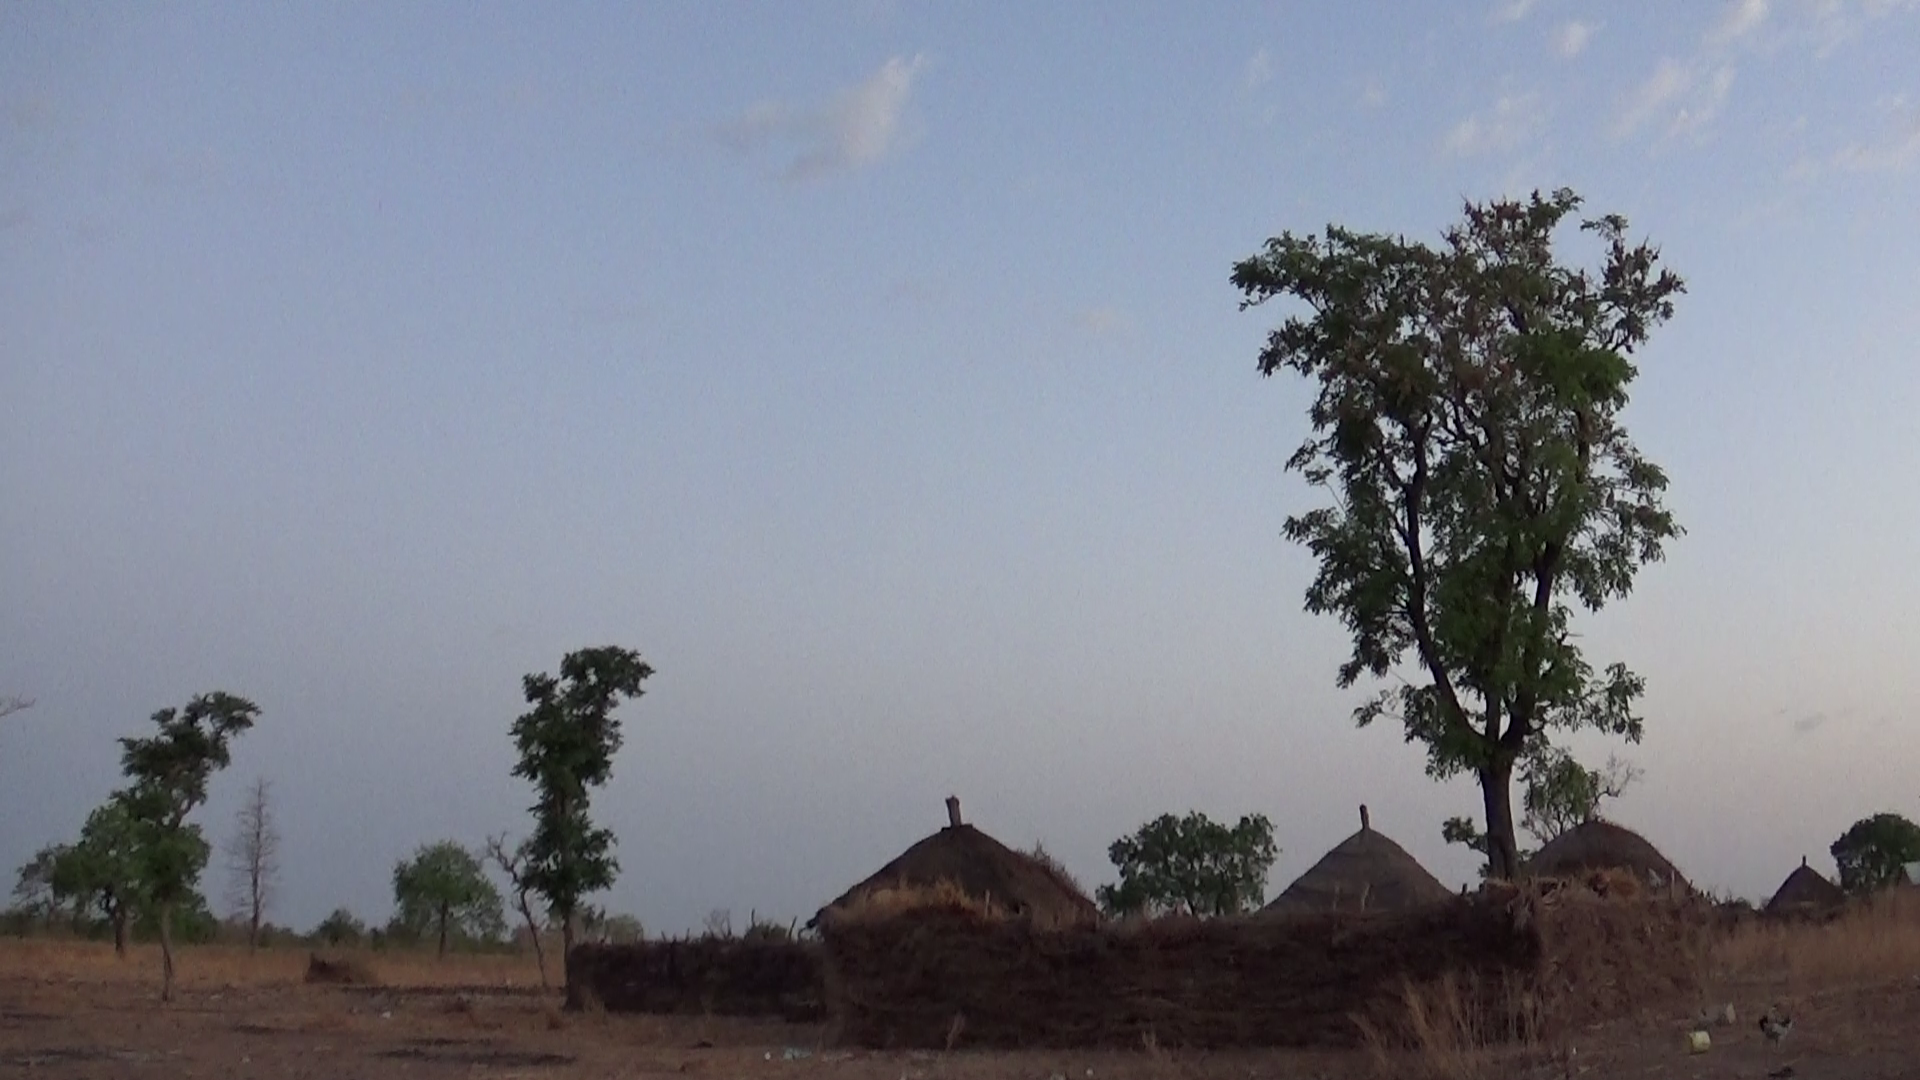 les familles habitent regroupées dans des cases entourées d'une palissade en herbes sèches